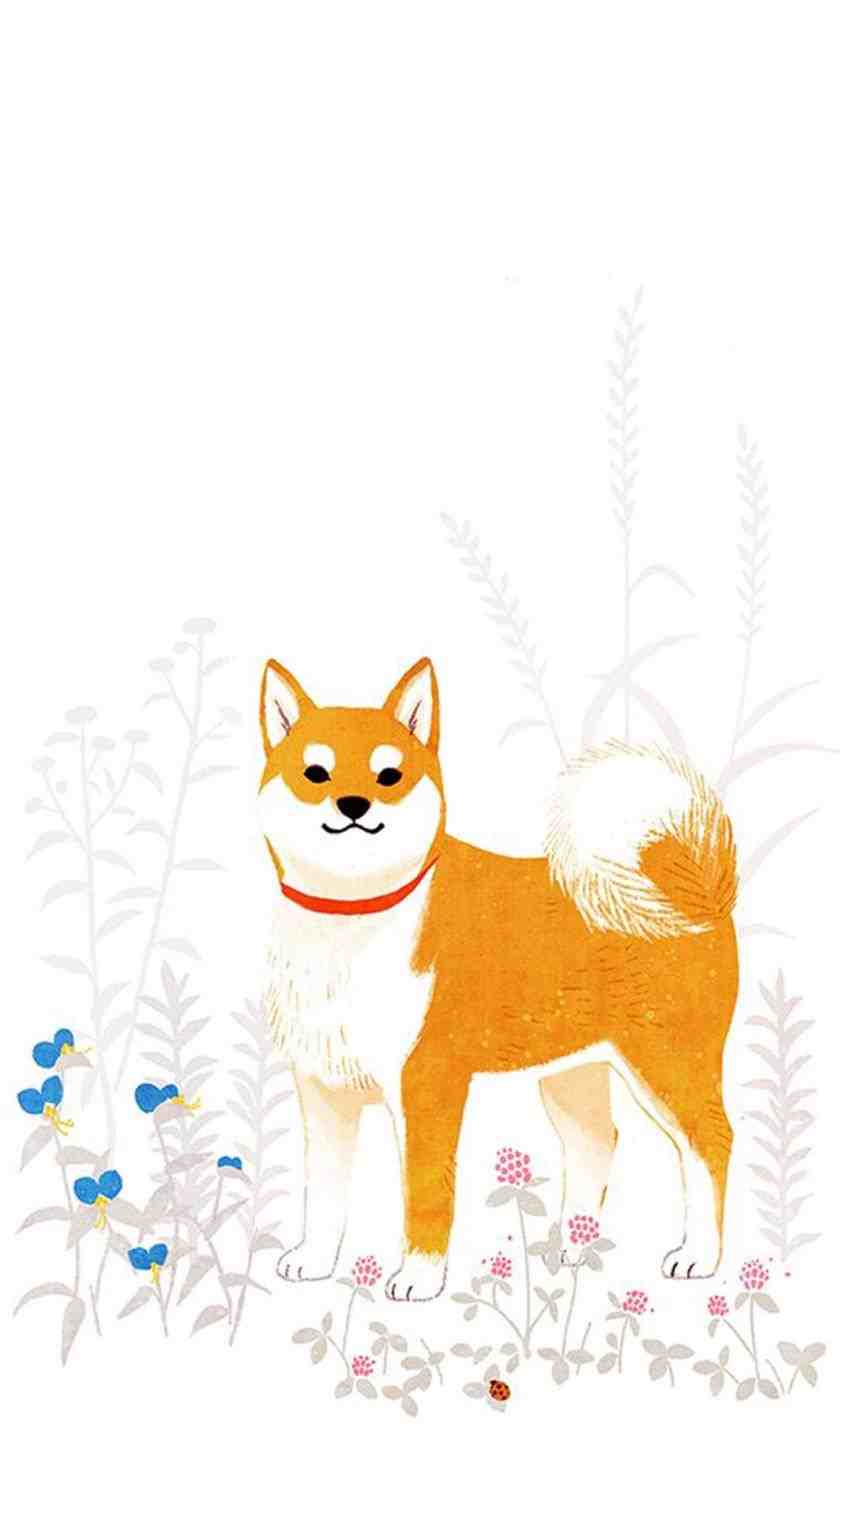 Dog Cartoon iPhone Wallpapers - Top Free Dog Cartoon iPhone Backgrounds - WallpaperAccess